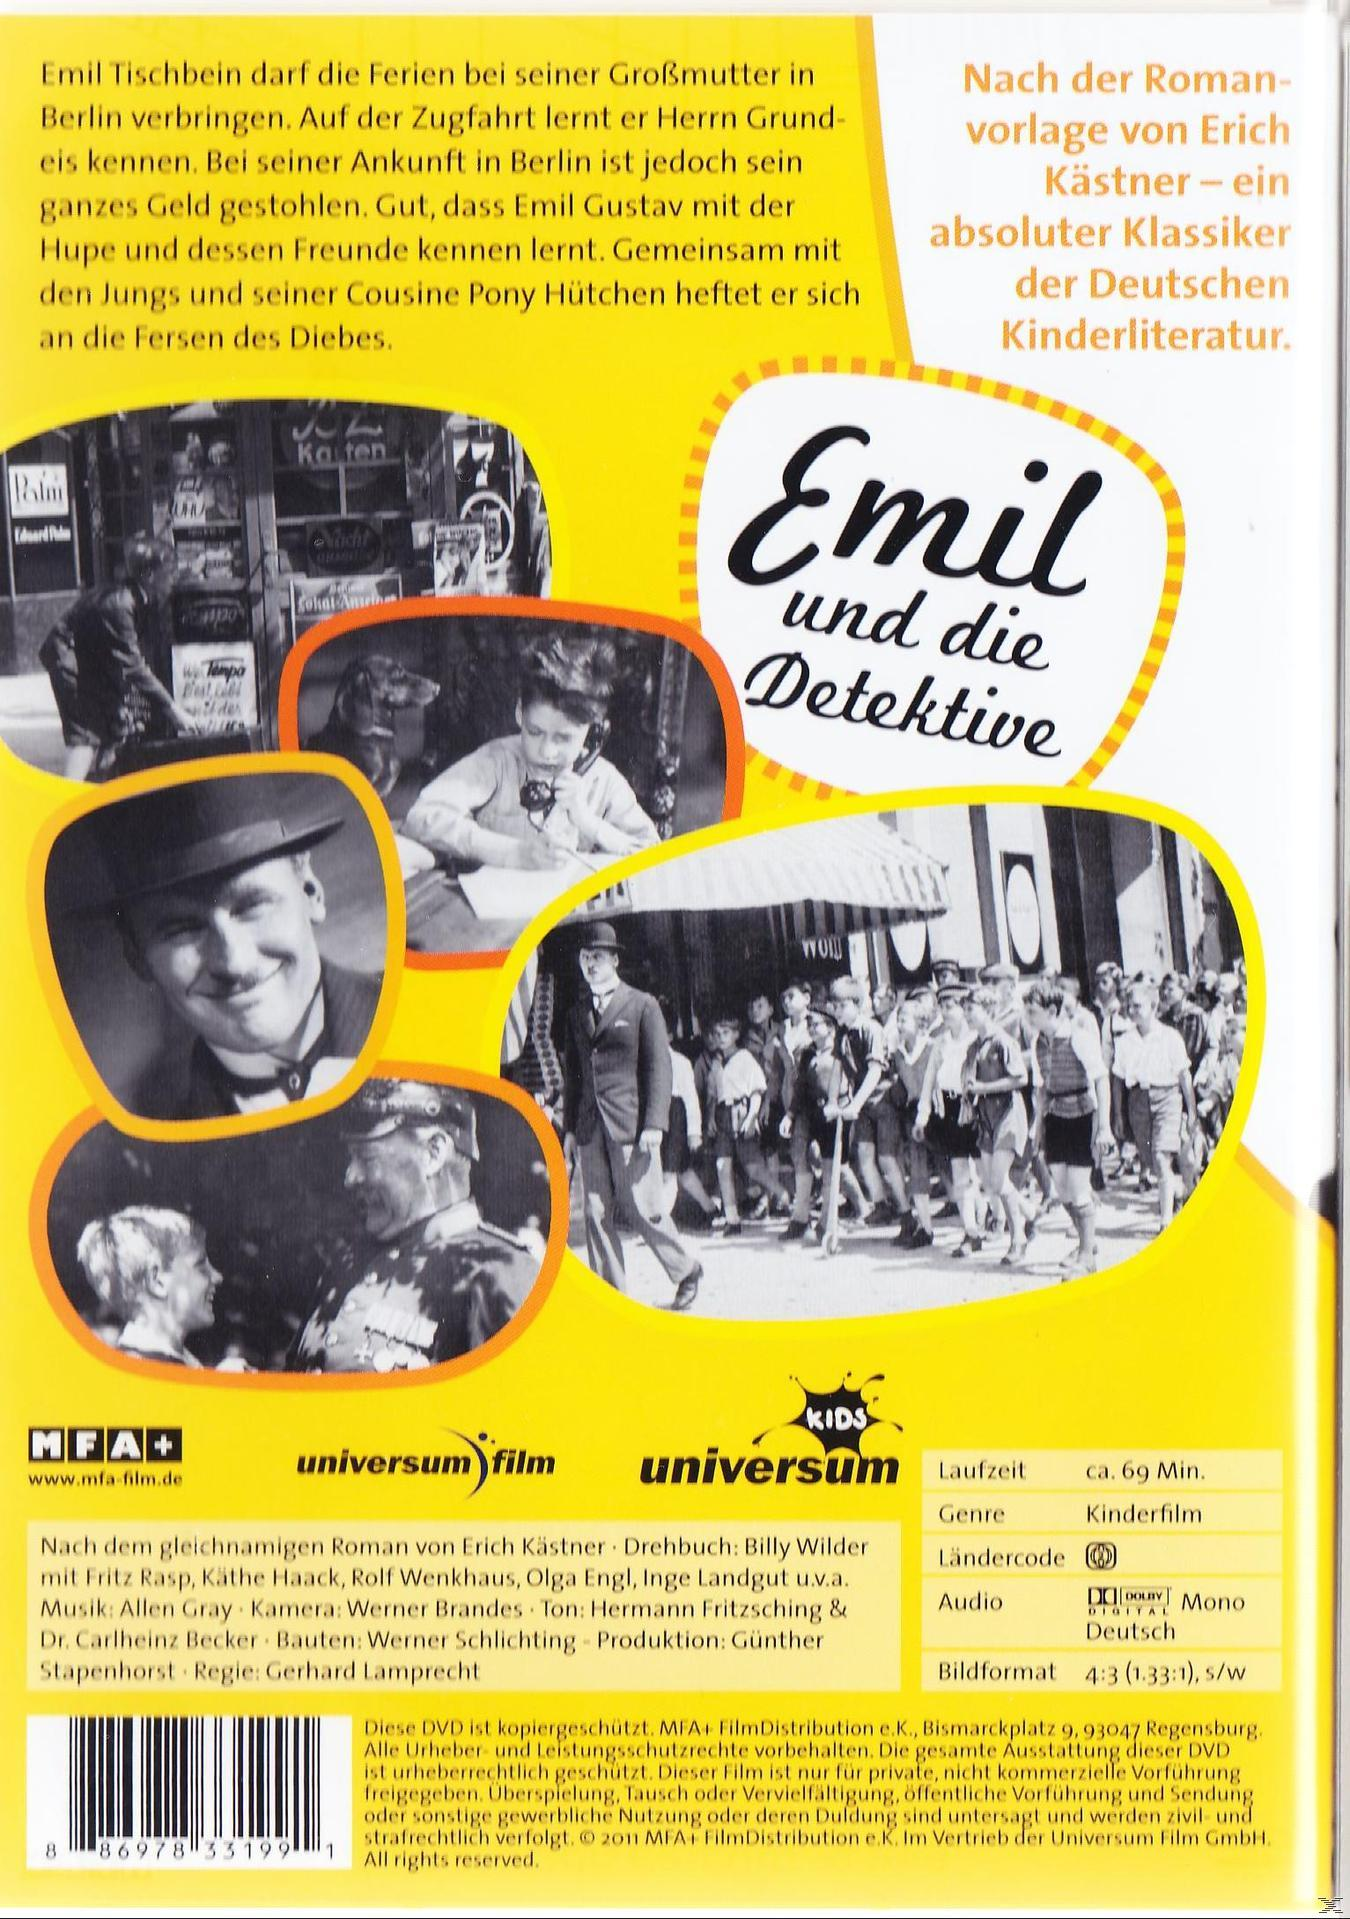 Detektive DVD und die Emil